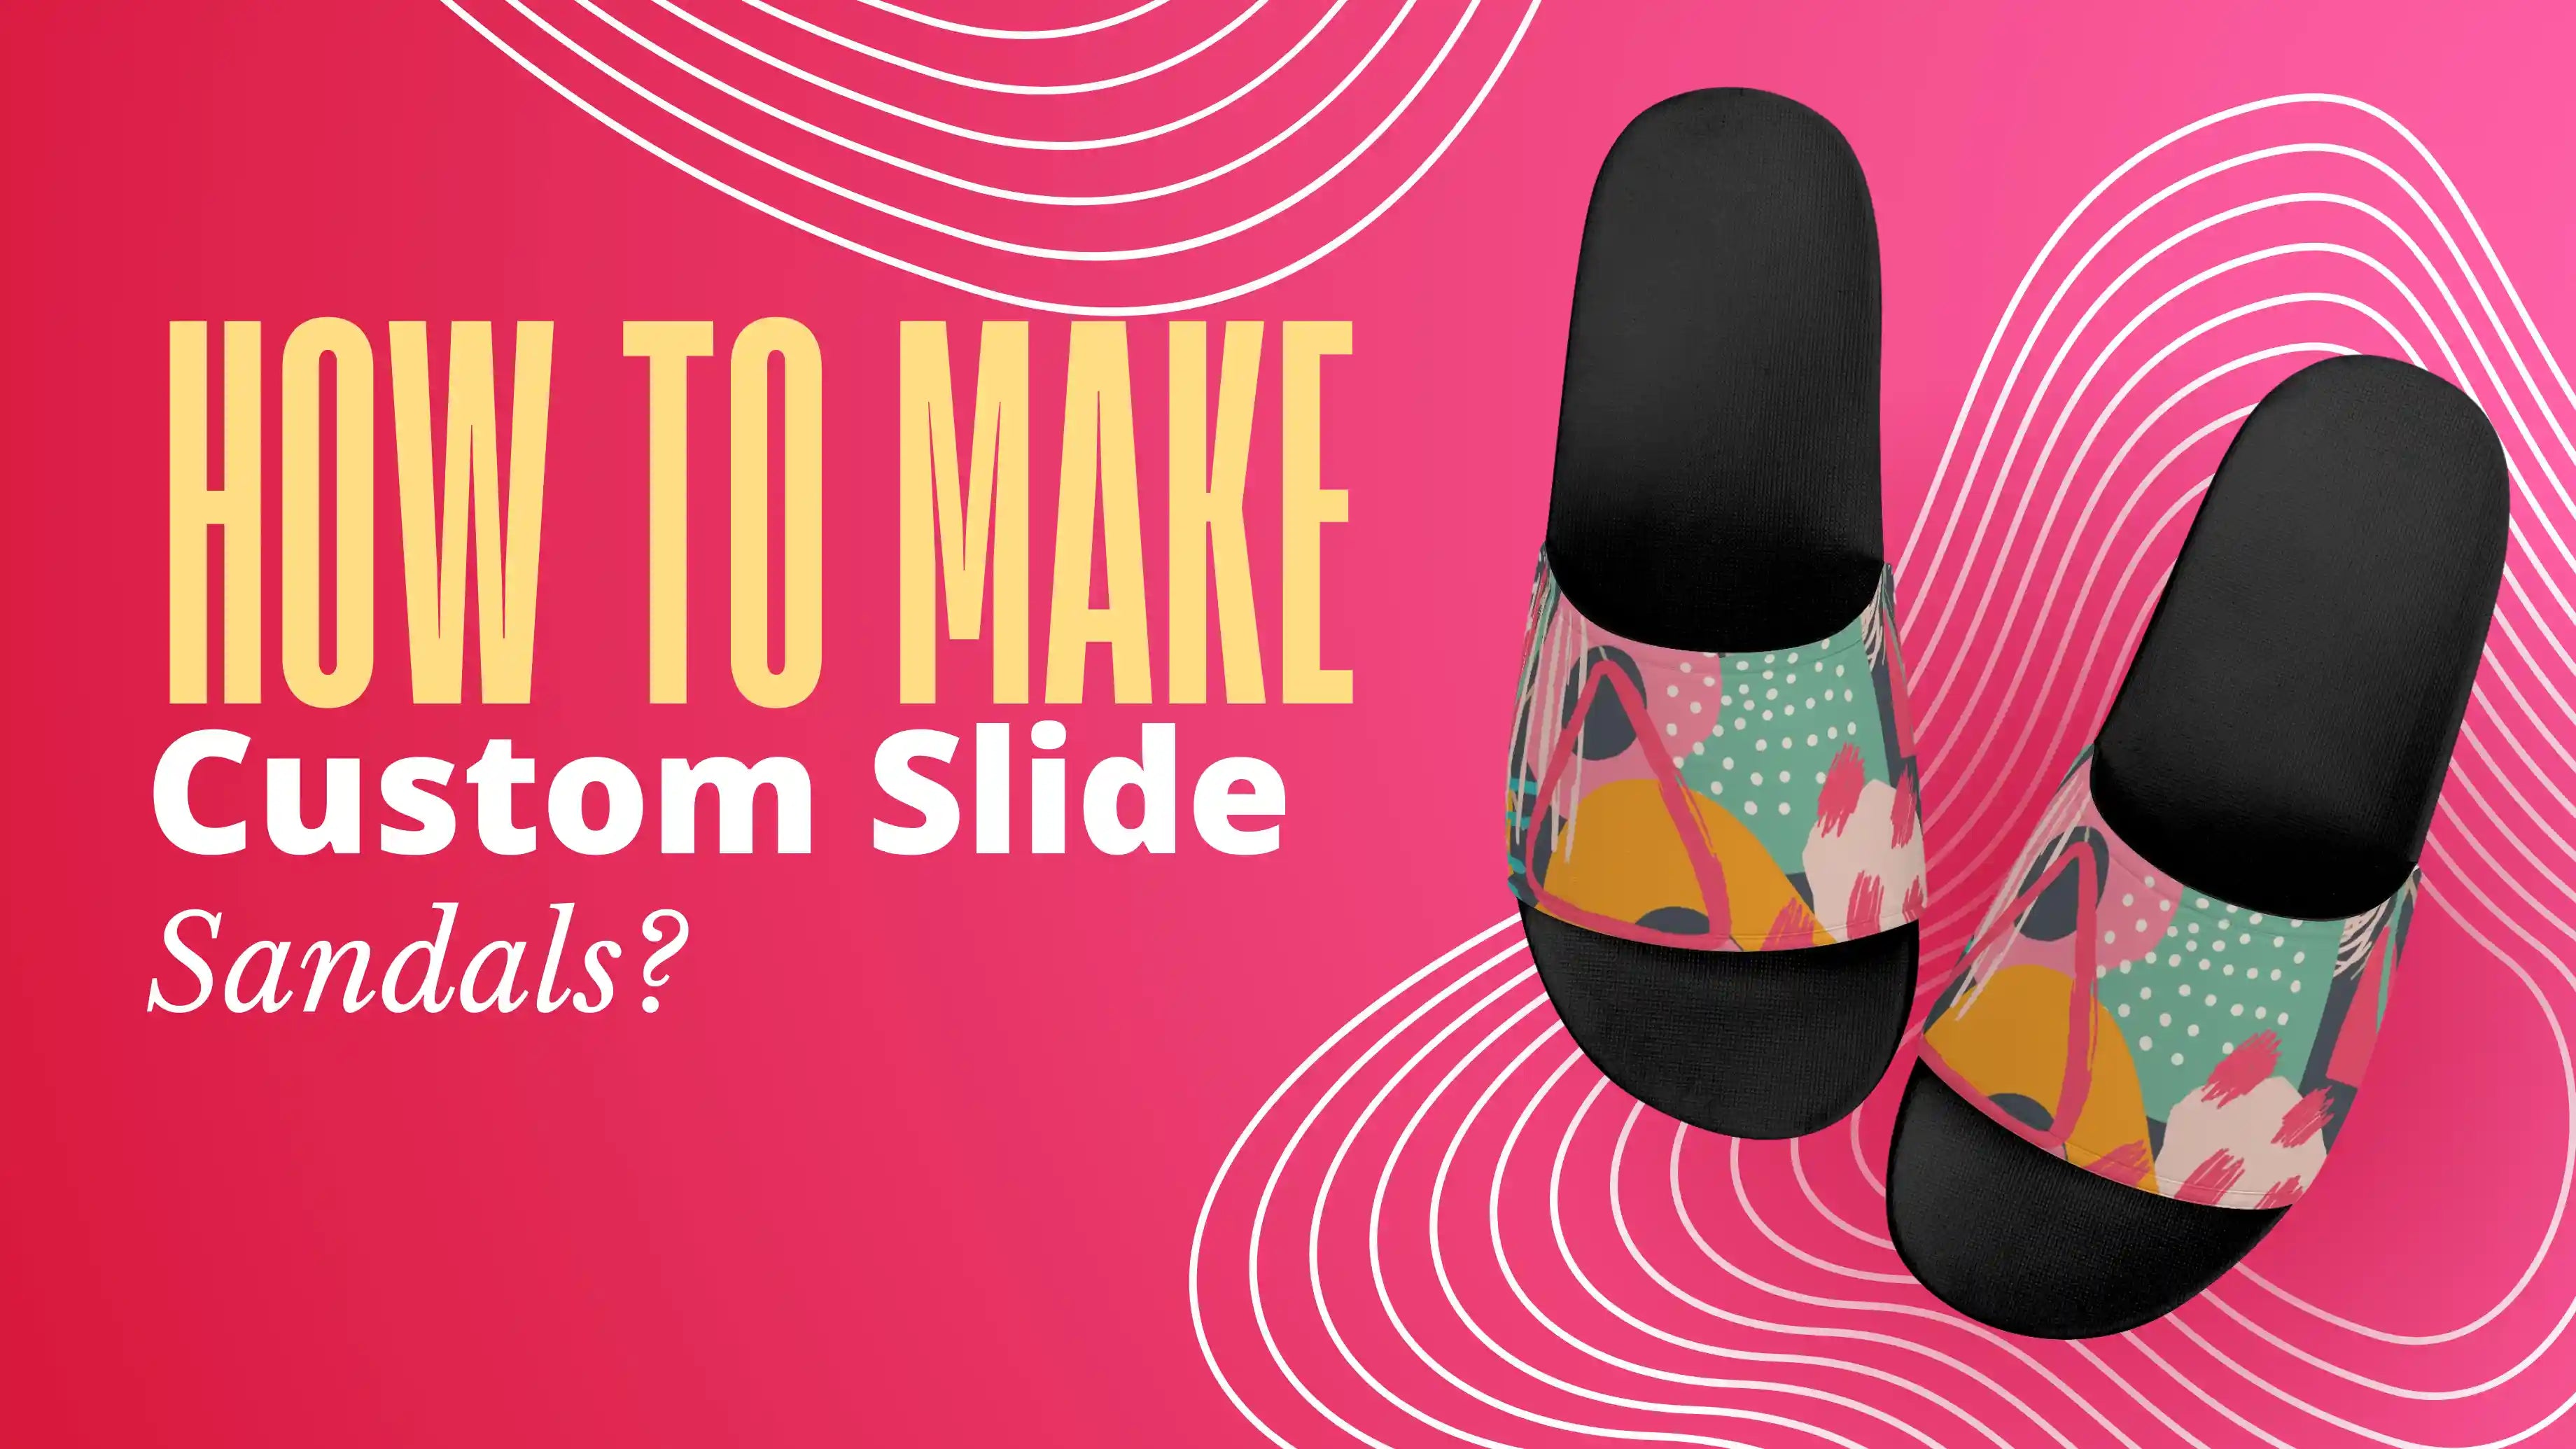 How To Make Custom Slide Sandals